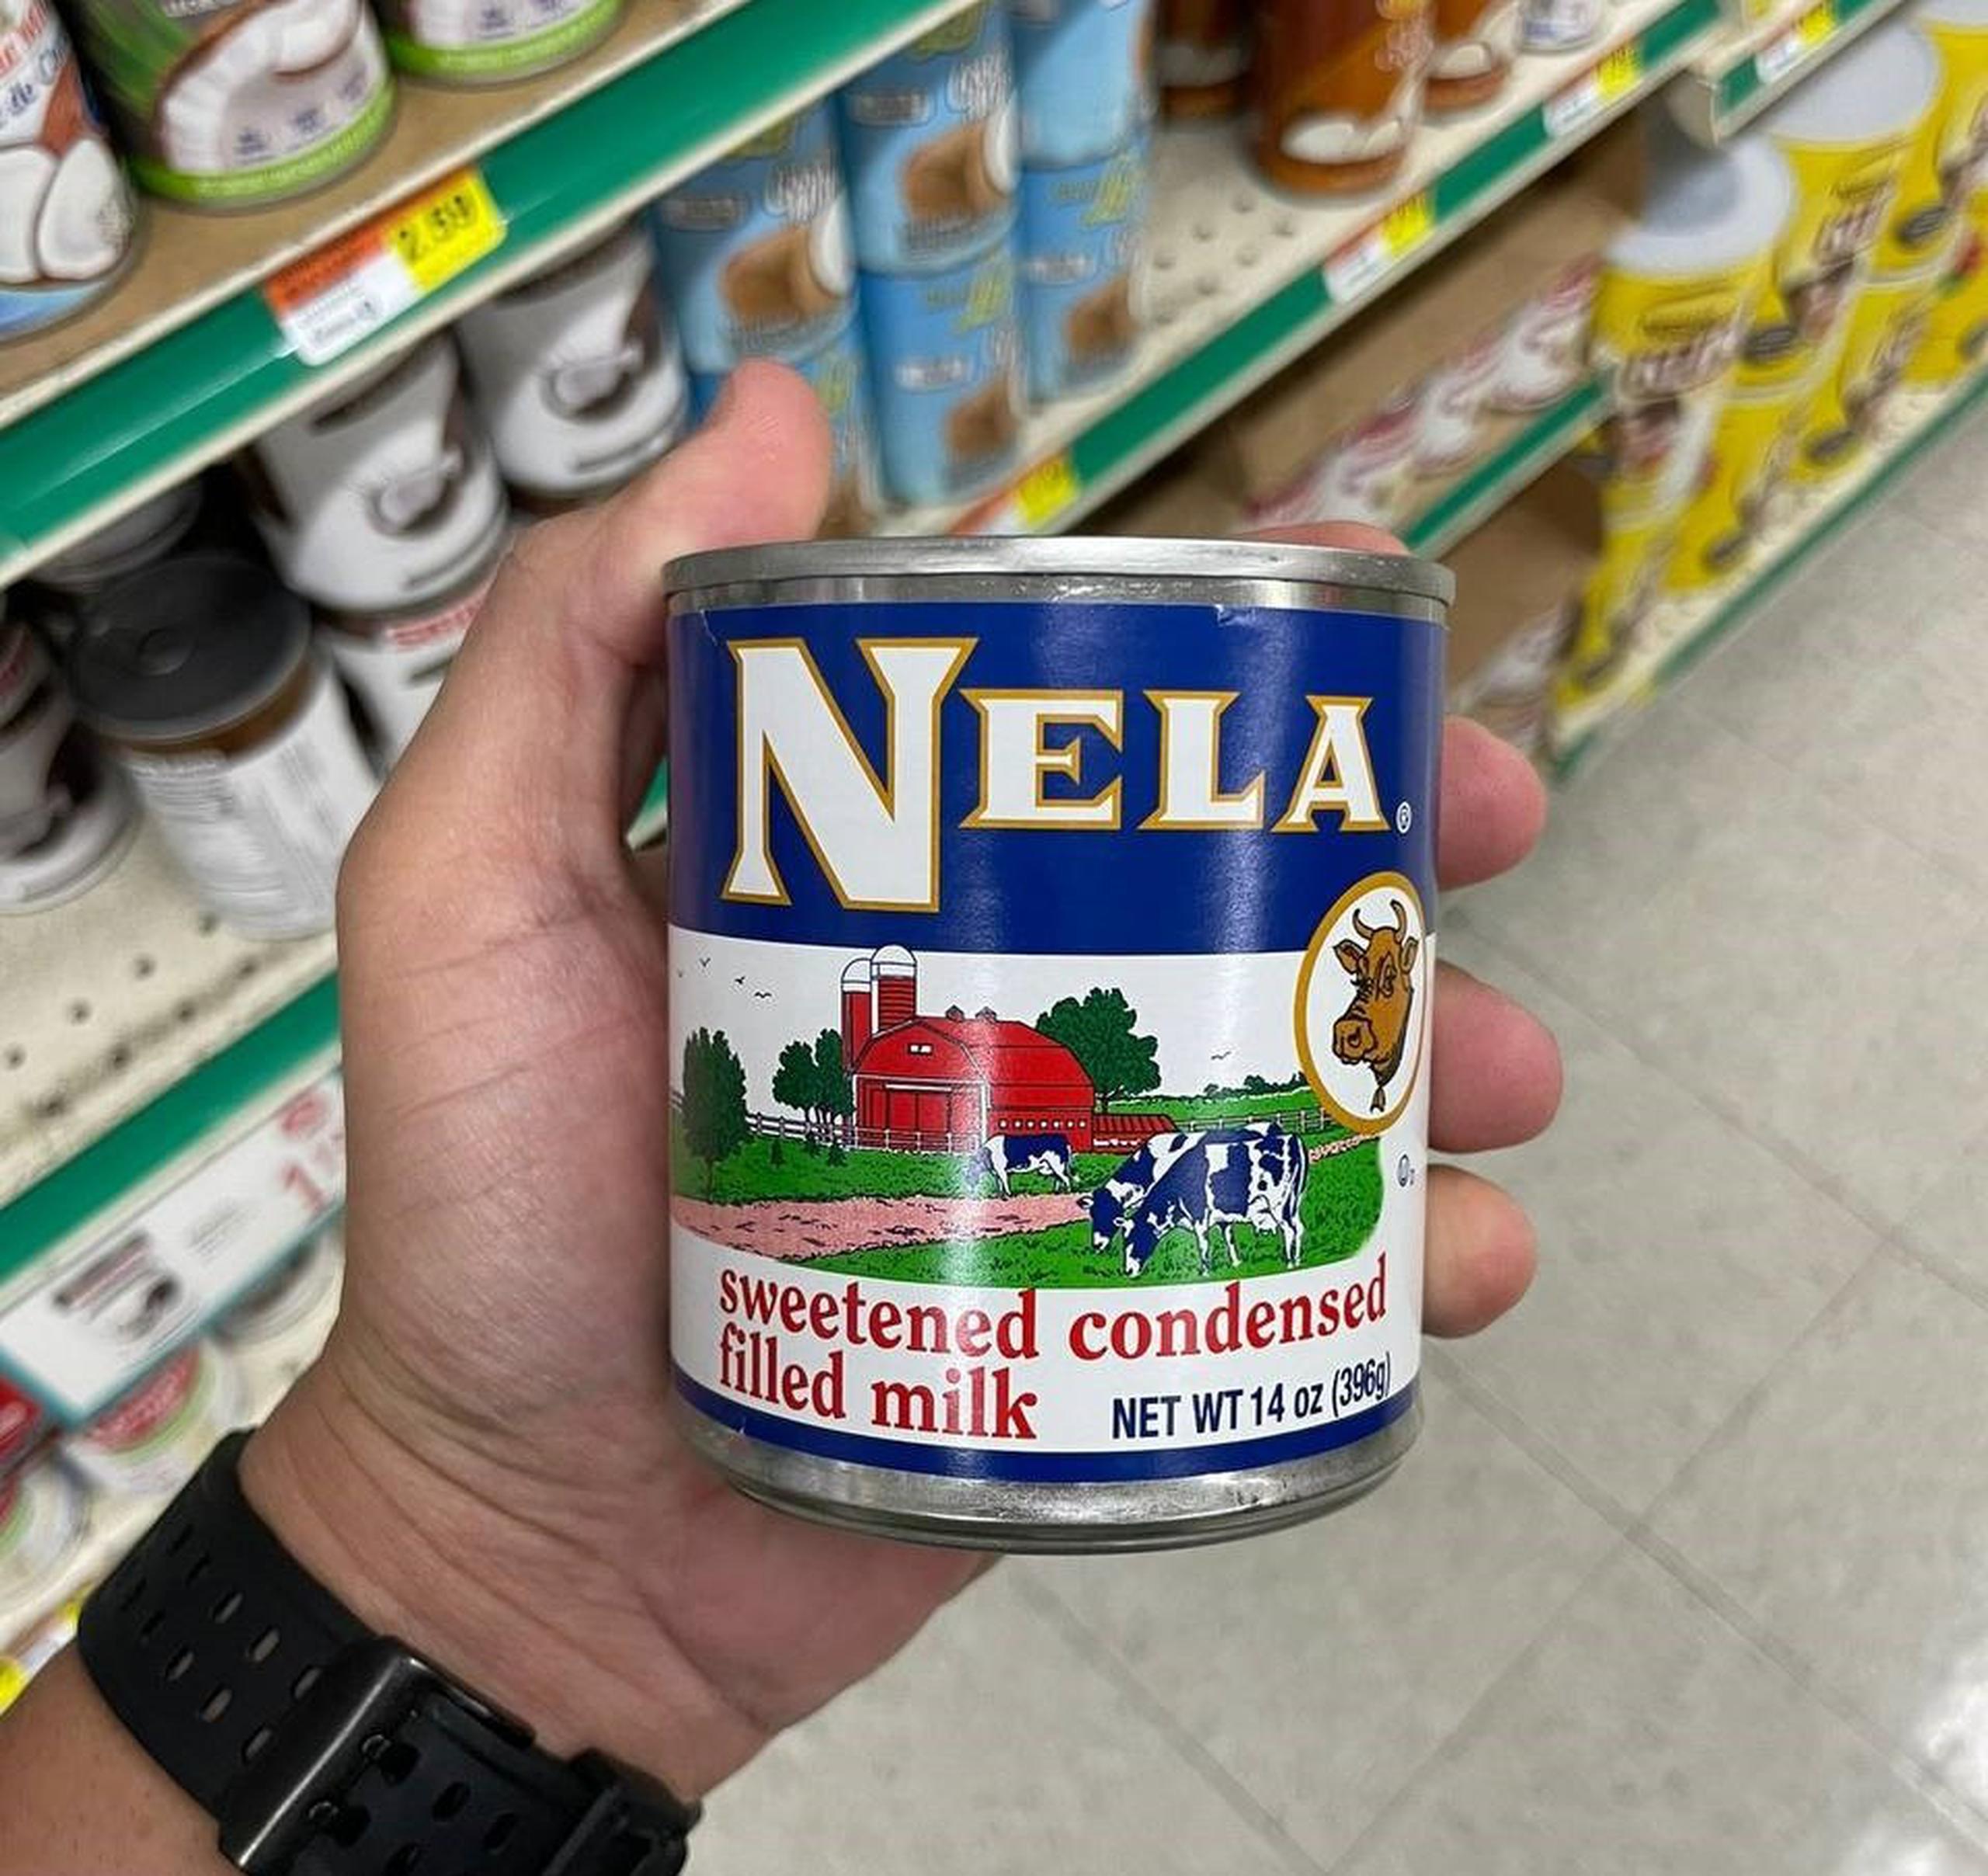 La marca Nela no cumple con la regulación de etiqueta y no tiene licencia para importar.